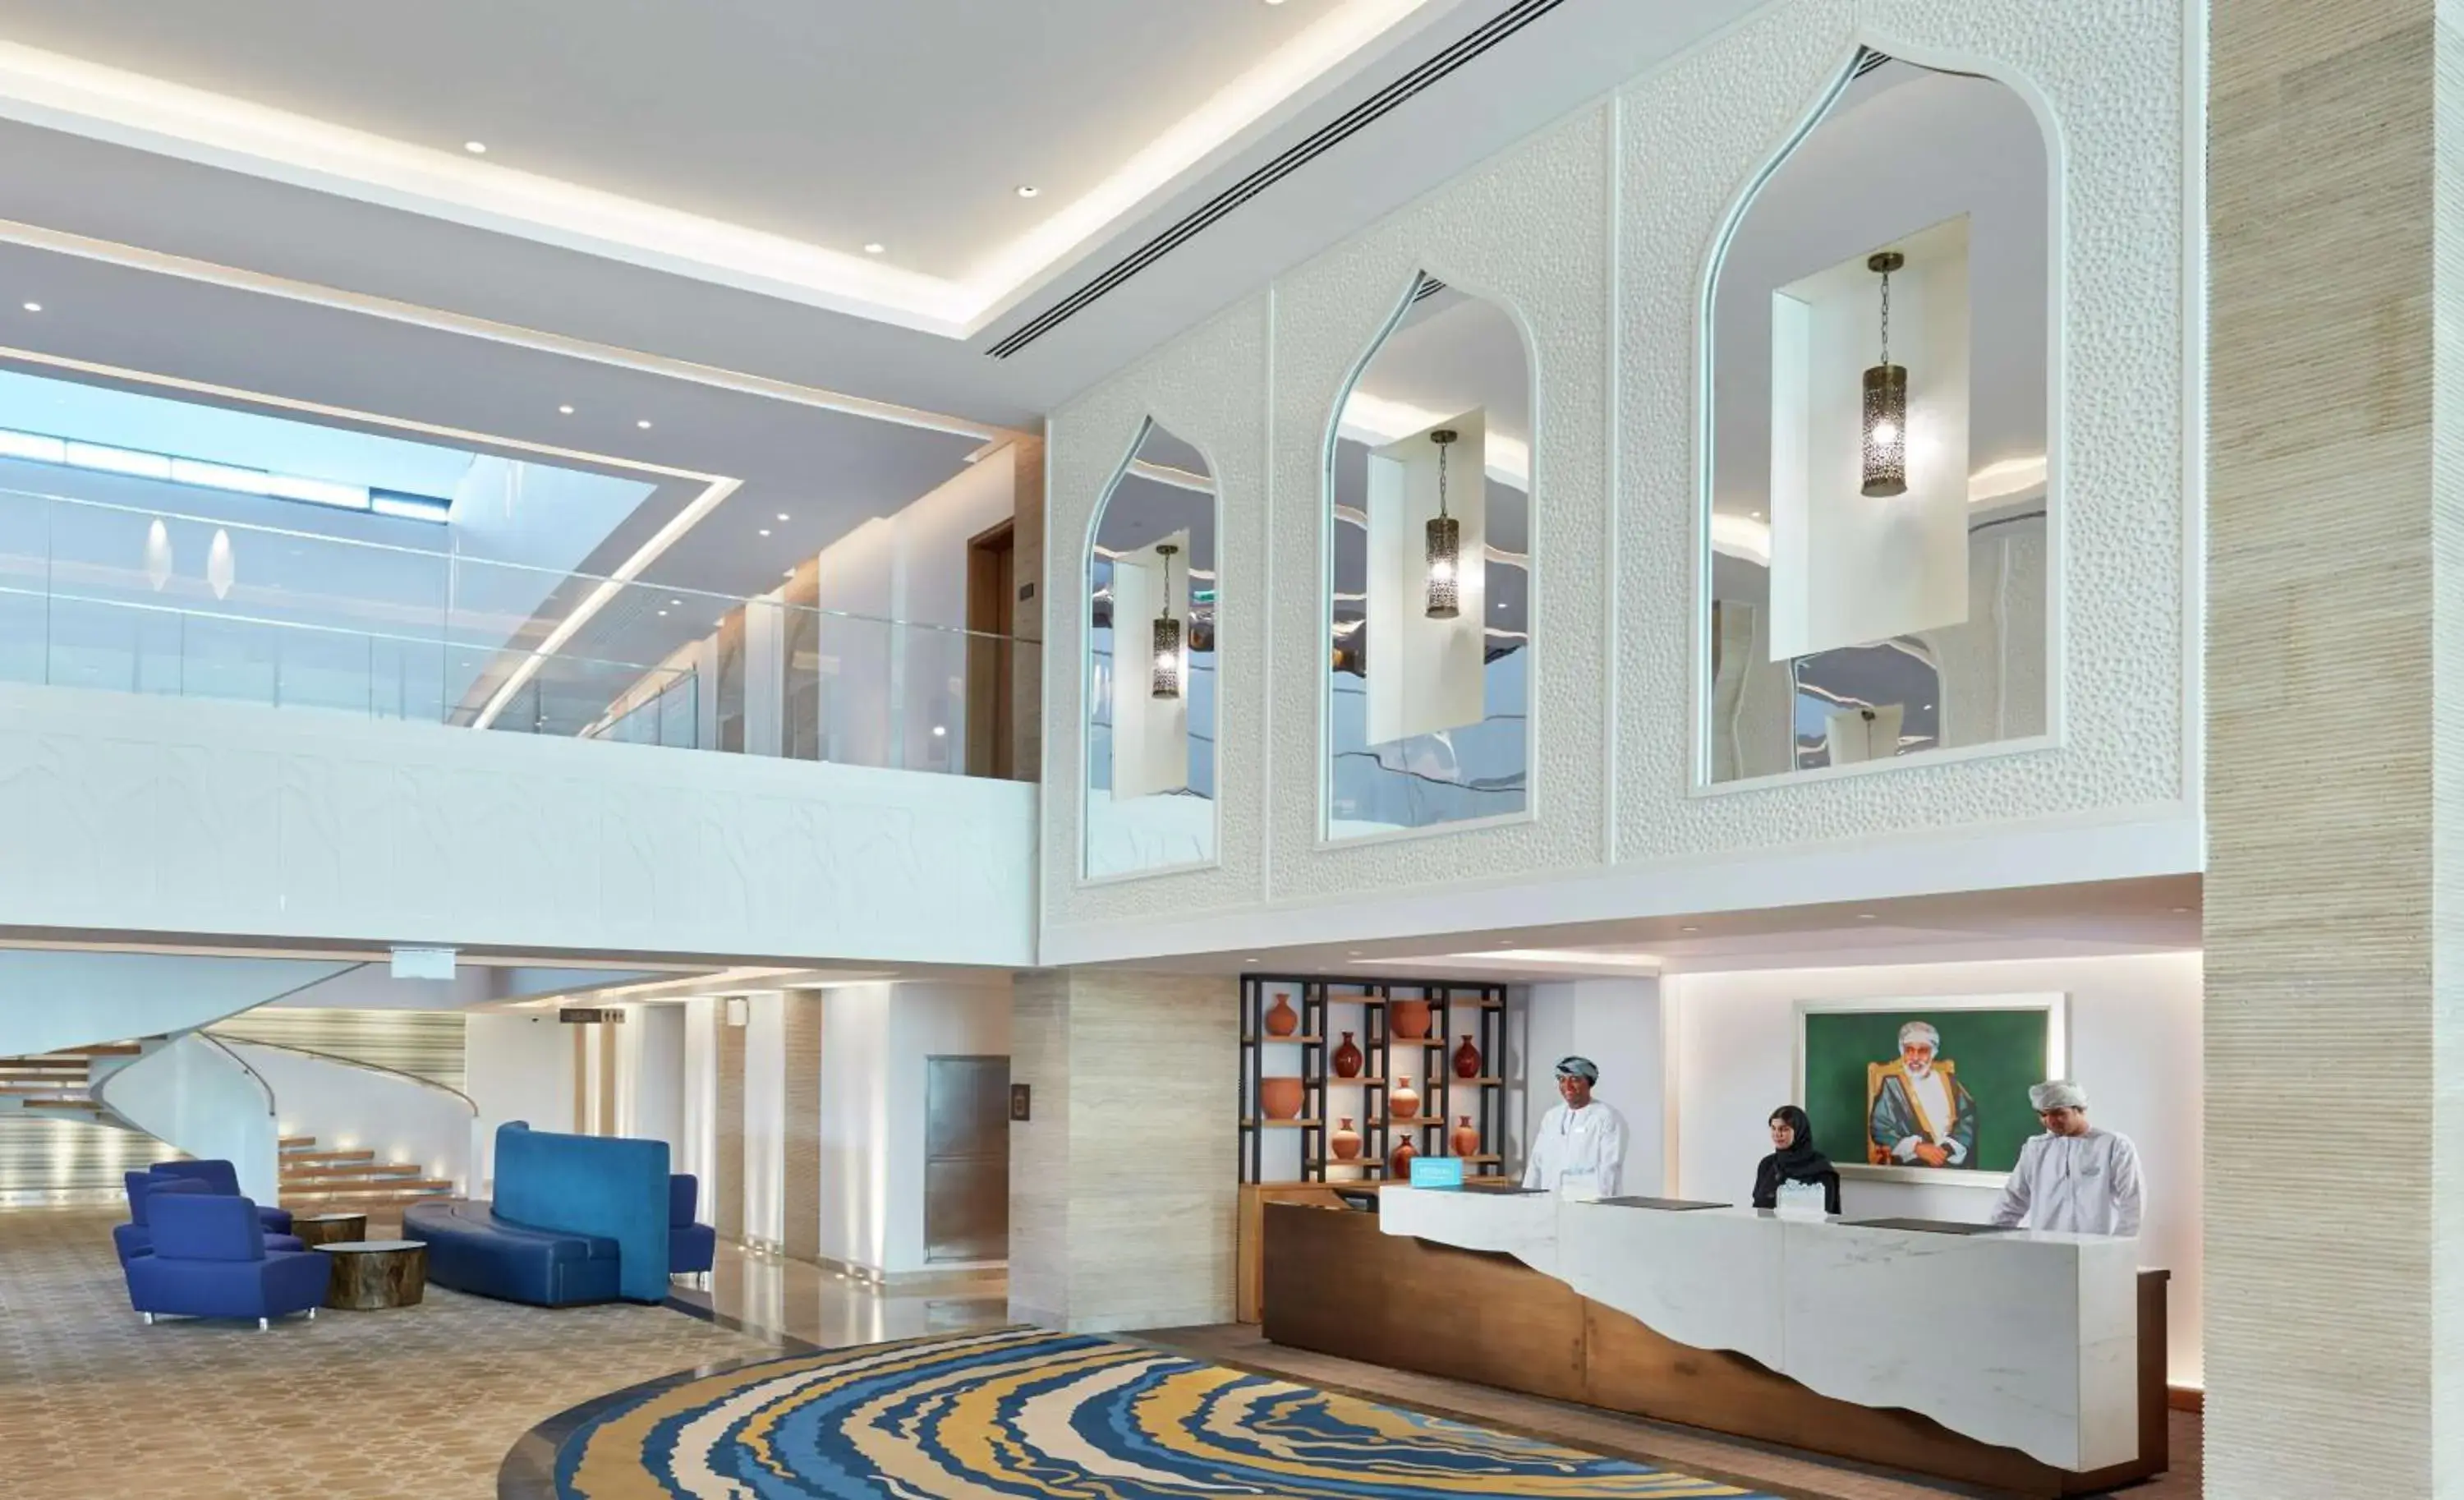 Lobby or reception, Lobby/Reception in Hilton Garden Inn Muscat Al Khuwair